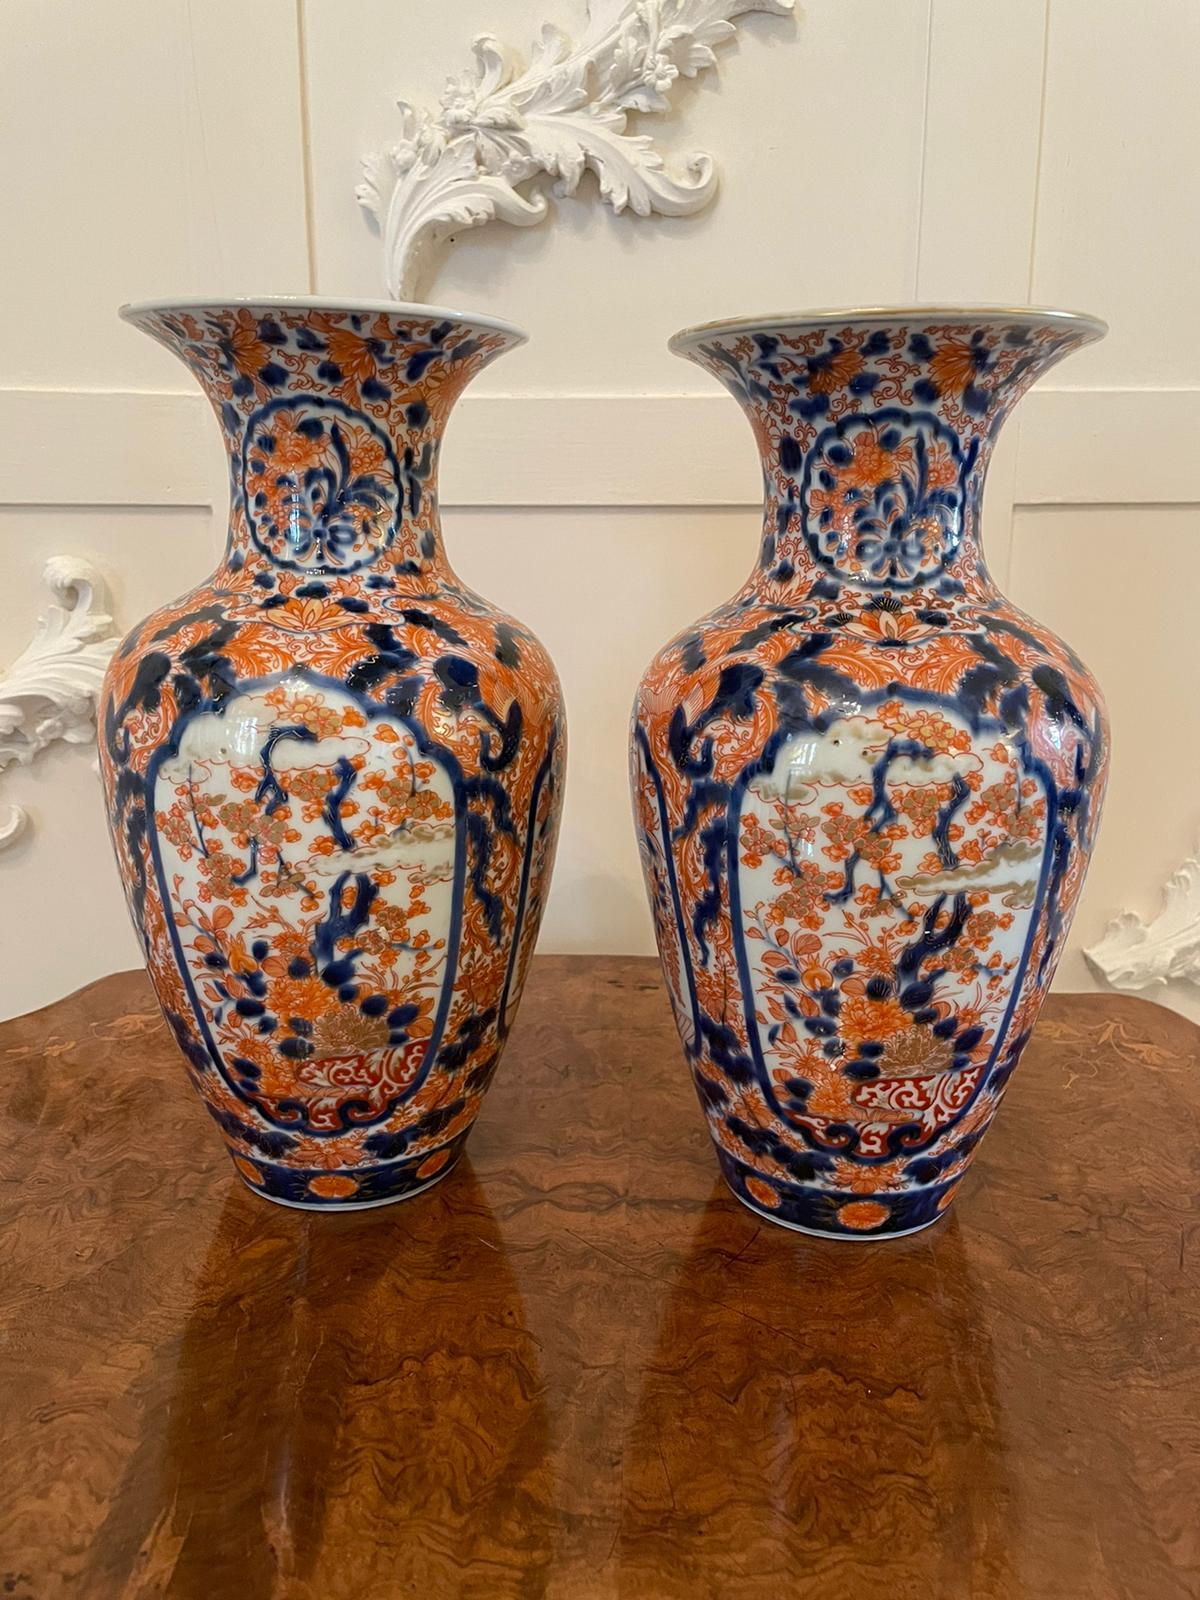 Ein Paar hochwertiger japanischer Imari-Vasen mit prächtiger Form und auffälligem, handgemaltem Dekor in Rot, Blau, Gold und Weiß.

Wunderschön dekorativ (ein kleiner Chip wie fotografiert).

Maße: H 30cm
B 17cm
D 17cm
1900.
    